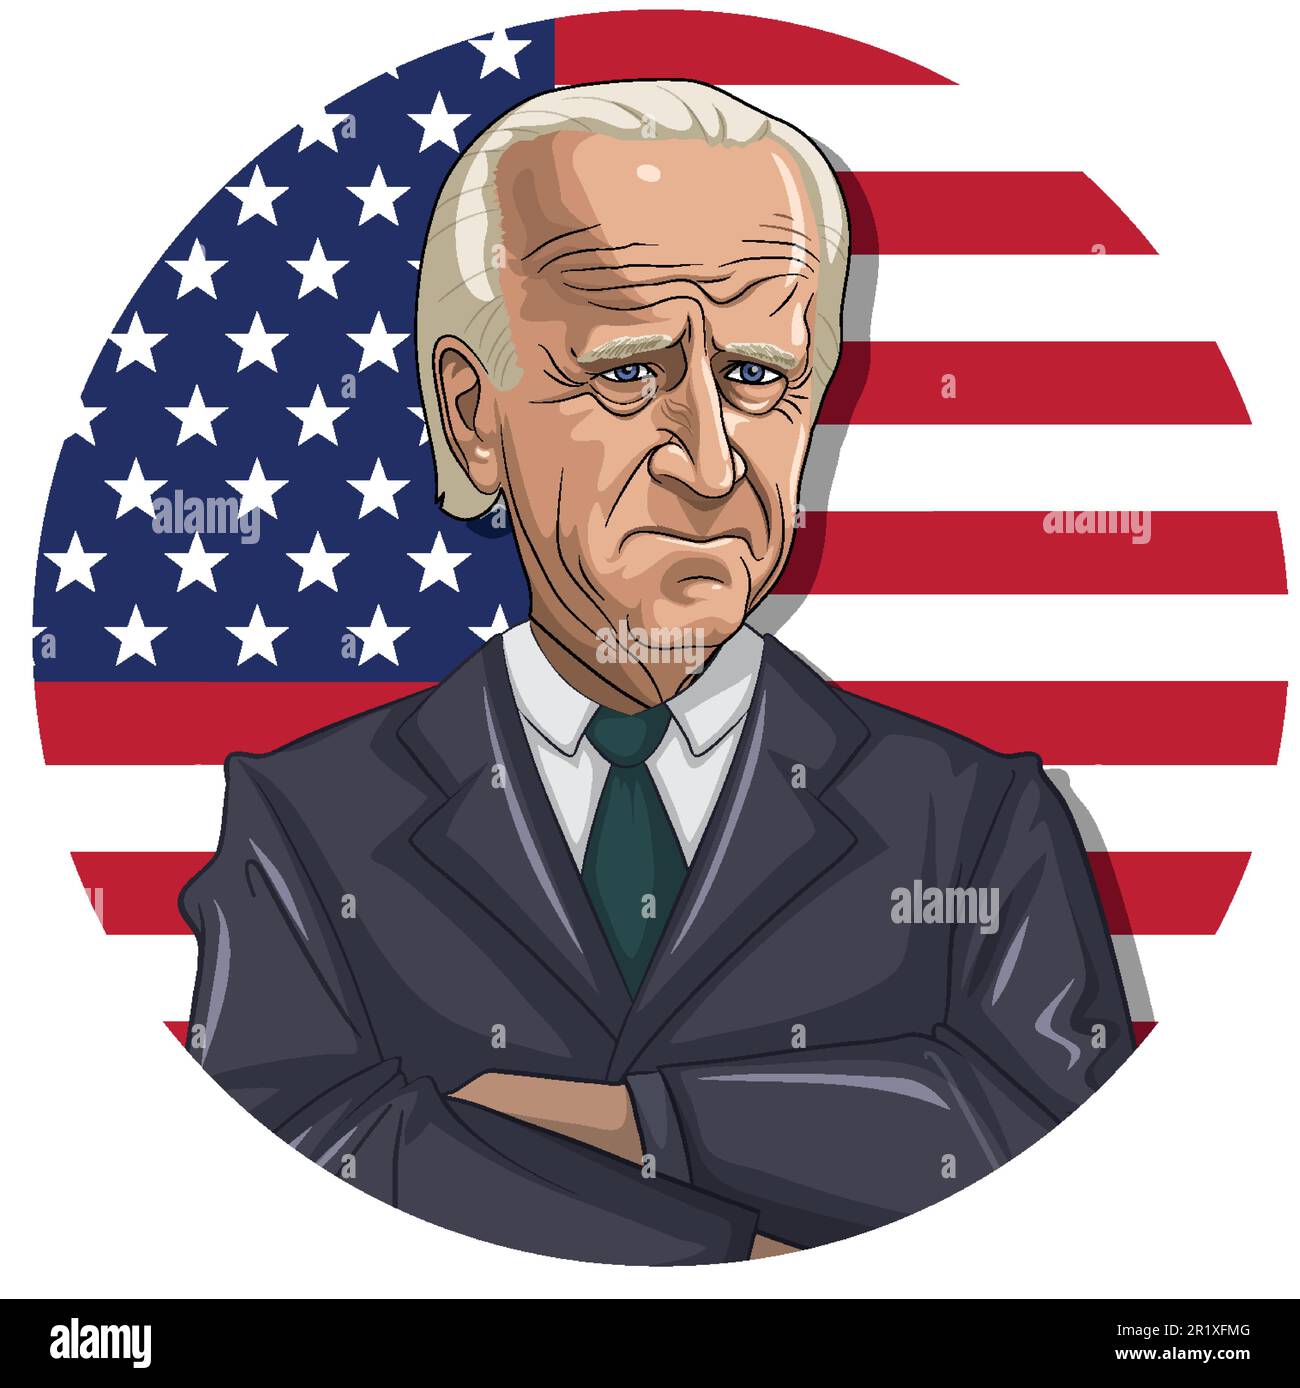 Joe Biden, amerikanischer Politiker, mit einer Zeichentrickfigur mit amerikanischer Flagge Stock Vektor